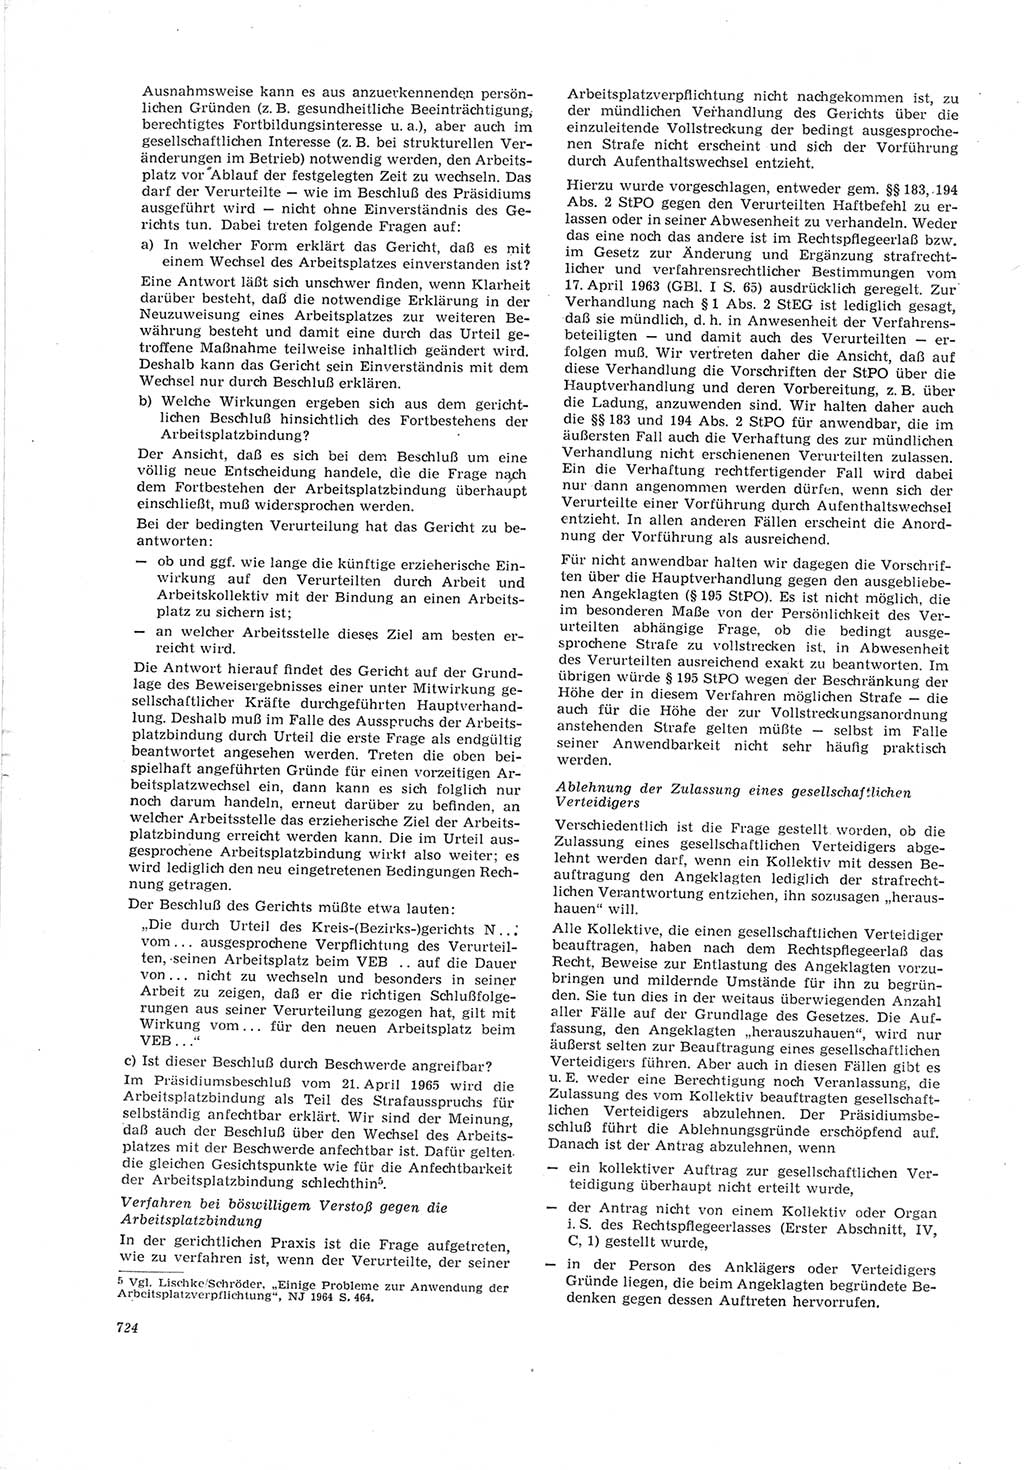 Neue Justiz (NJ), Zeitschrift für Recht und Rechtswissenschaft [Deutsche Demokratische Republik (DDR)], 19. Jahrgang 1965, Seite 724 (NJ DDR 1965, S. 724)